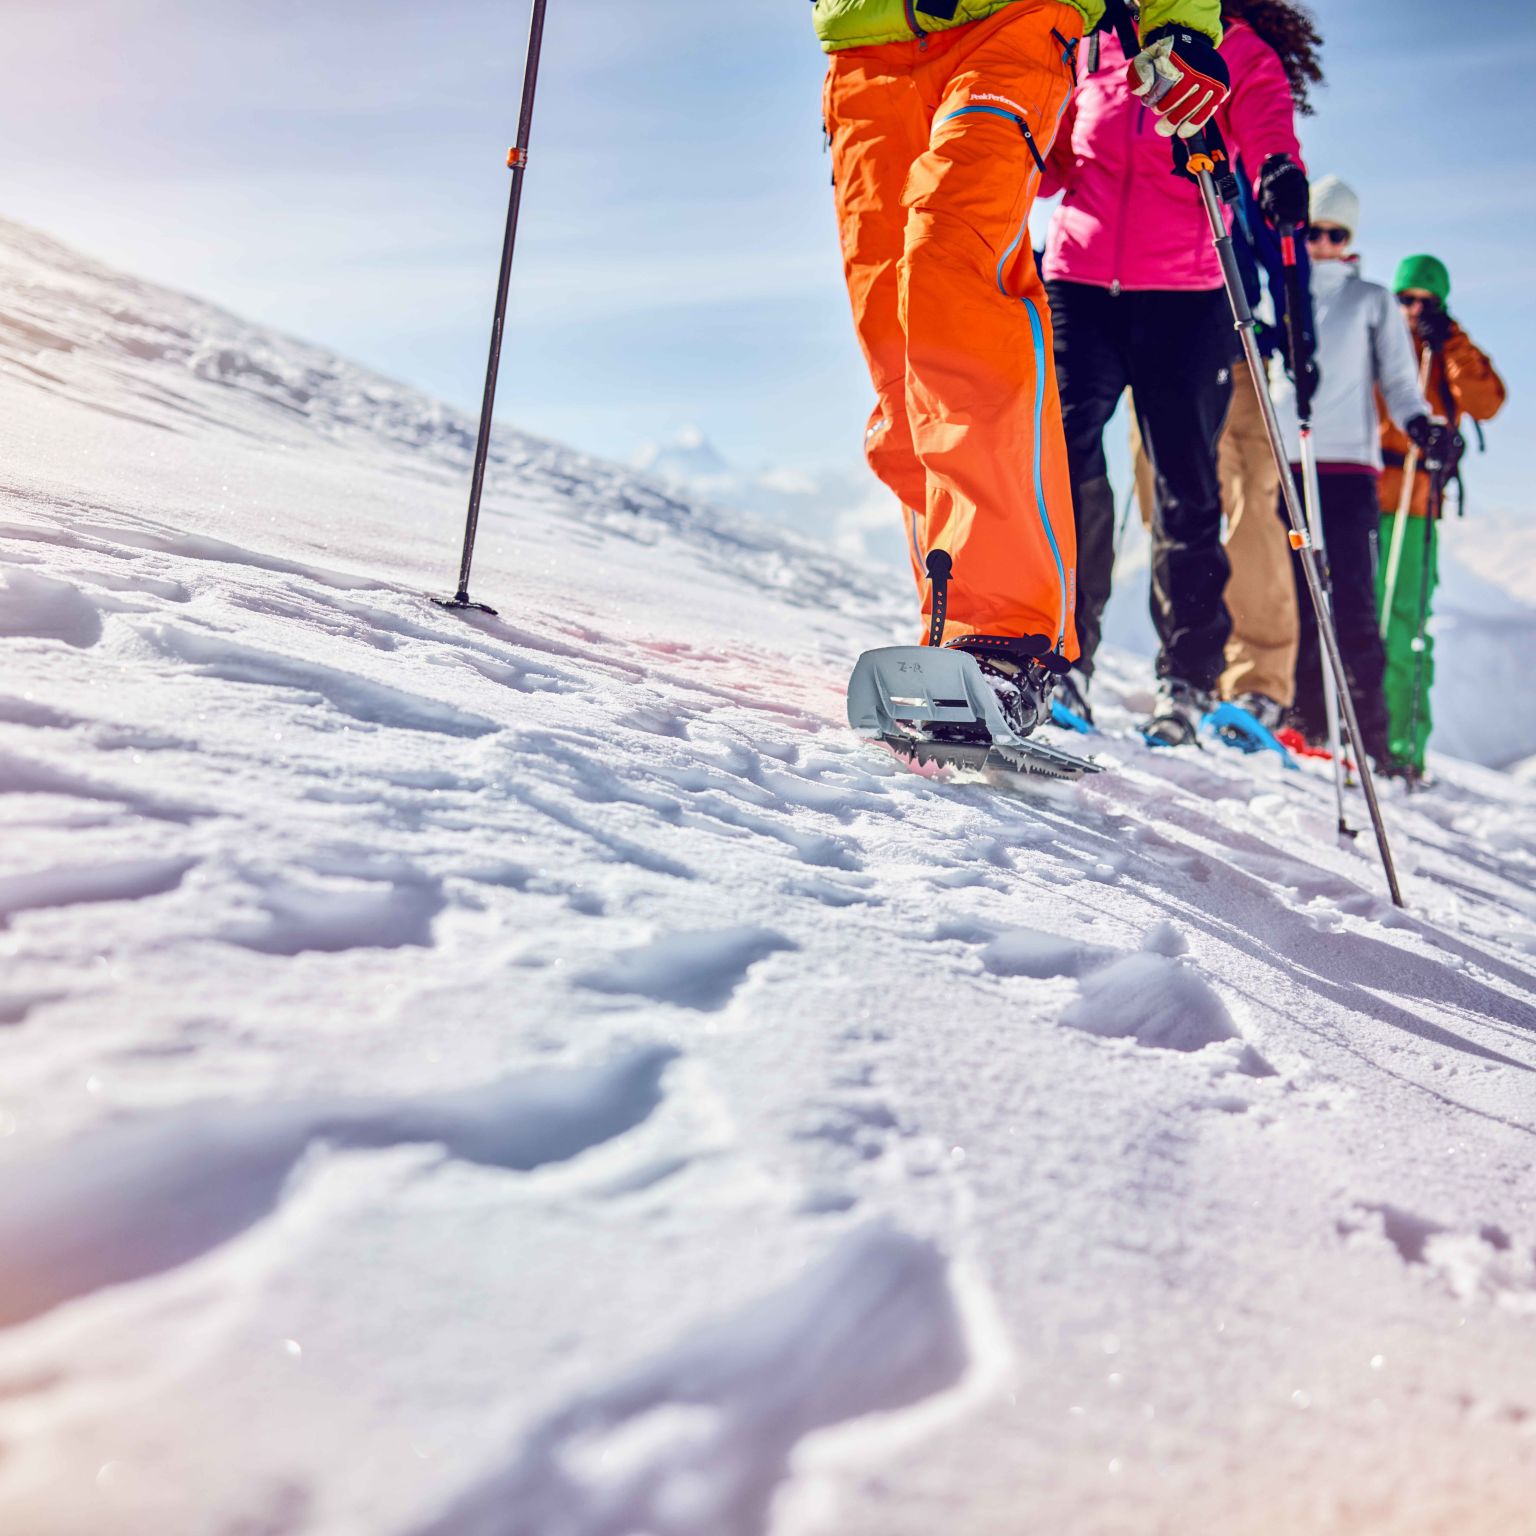 Quatre randonneurs hivernaux à Loèche-les-Bains en raquettes à neige, Valais, Suisse